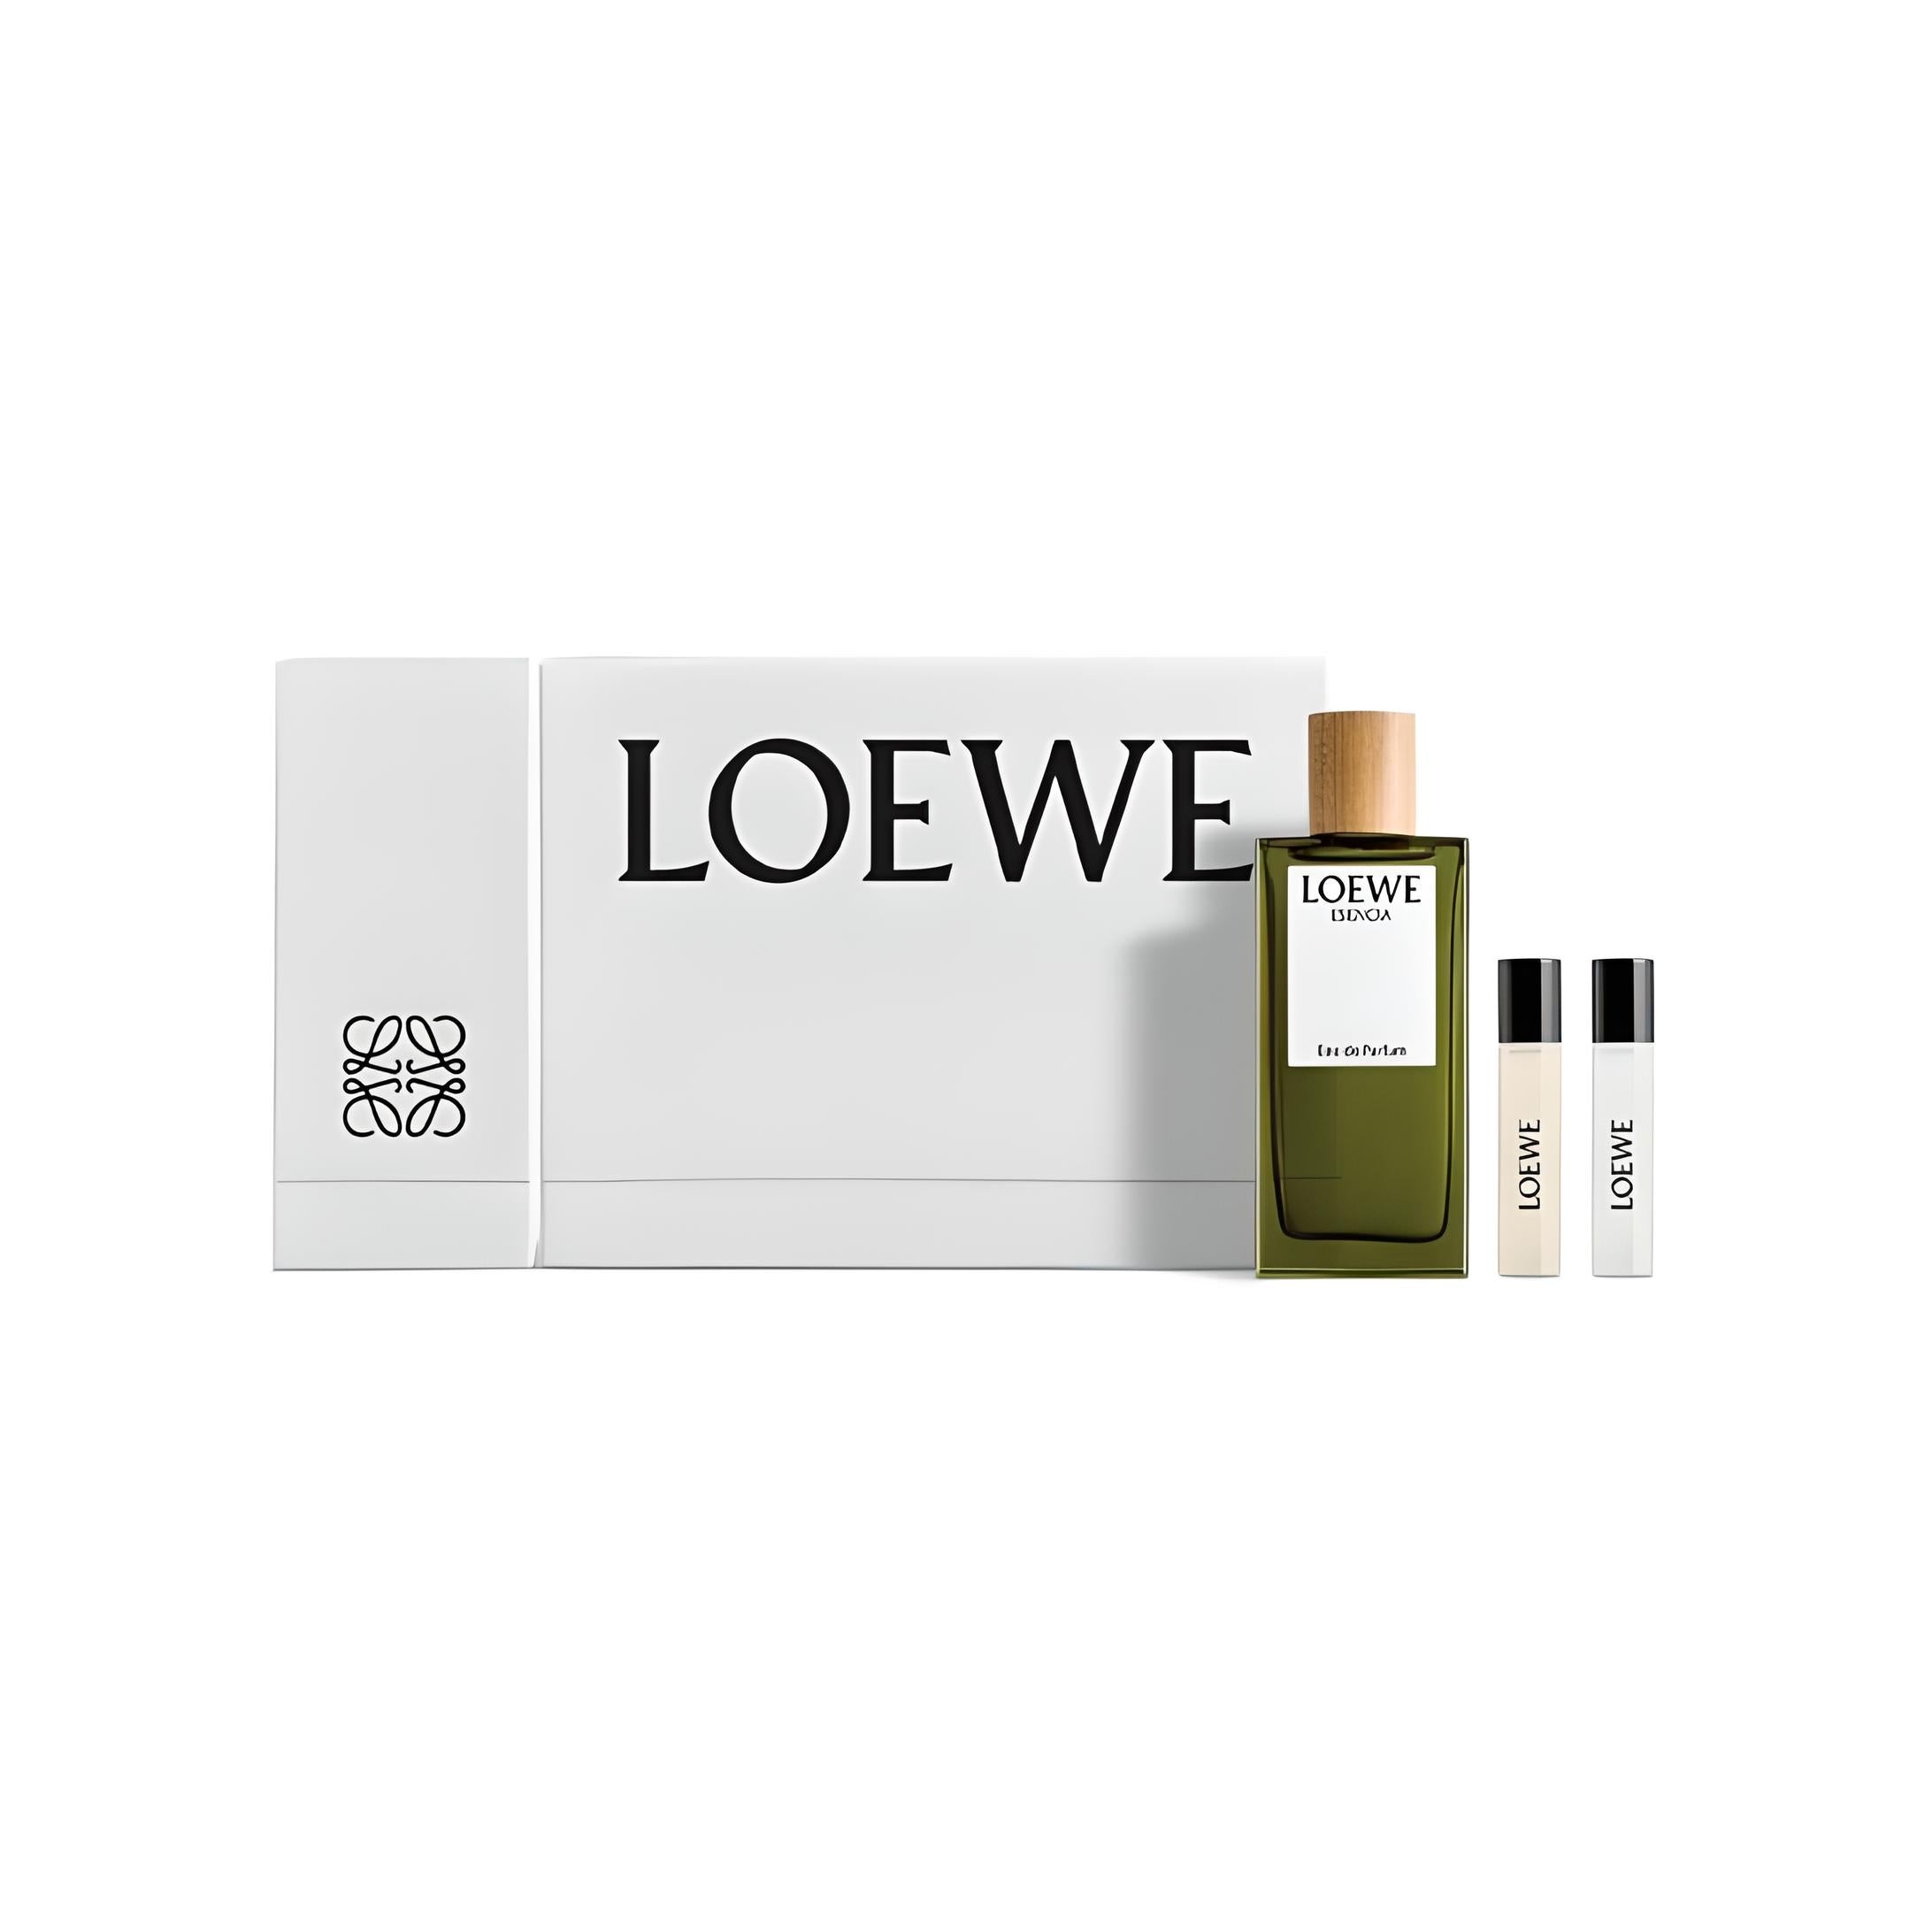 LOEWE Esencia Geschenkset Parfum-Set LOEWE   